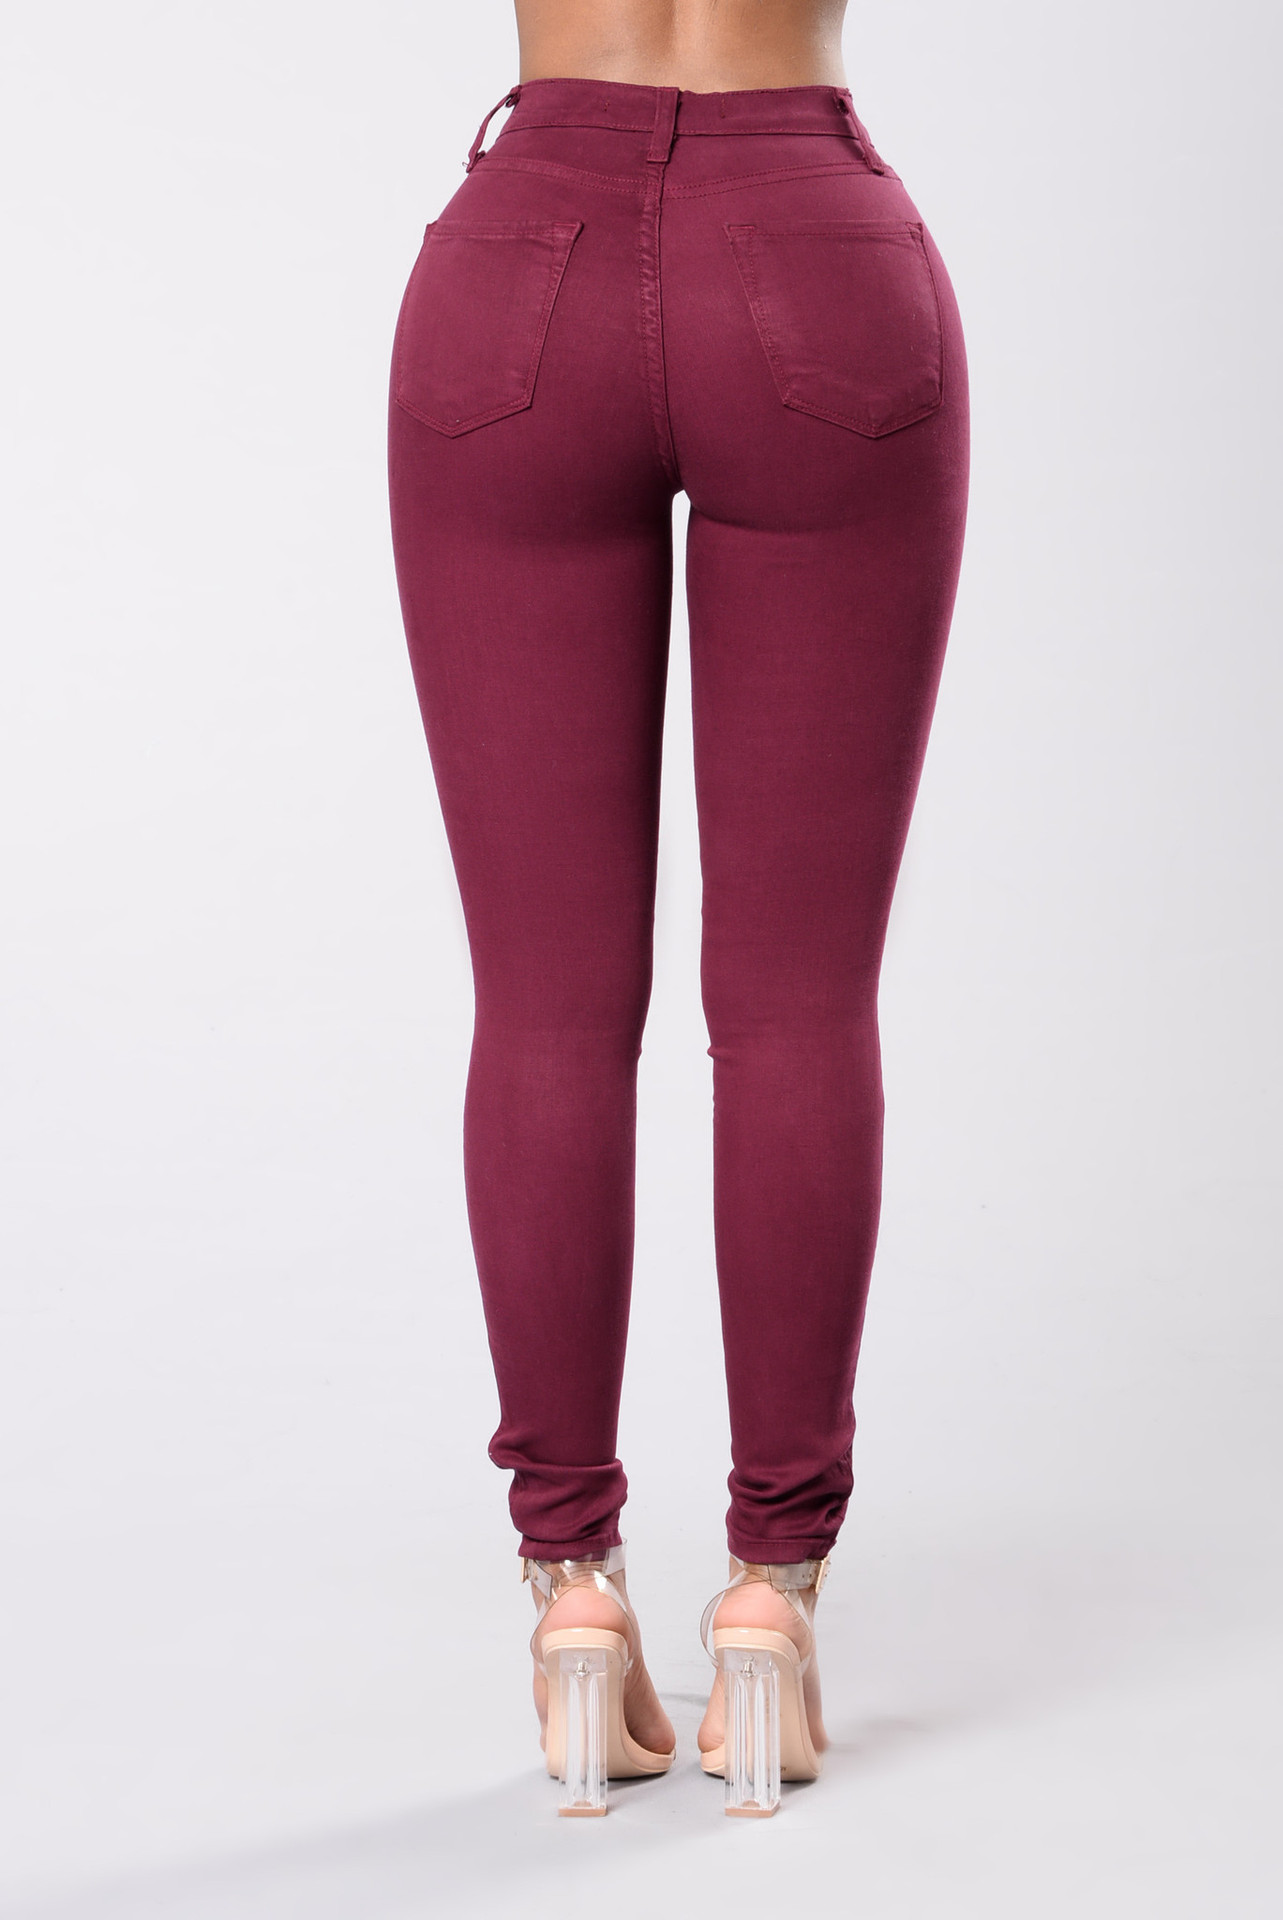 Wholesale-hole-color-elastic-jeans-leggings-woman